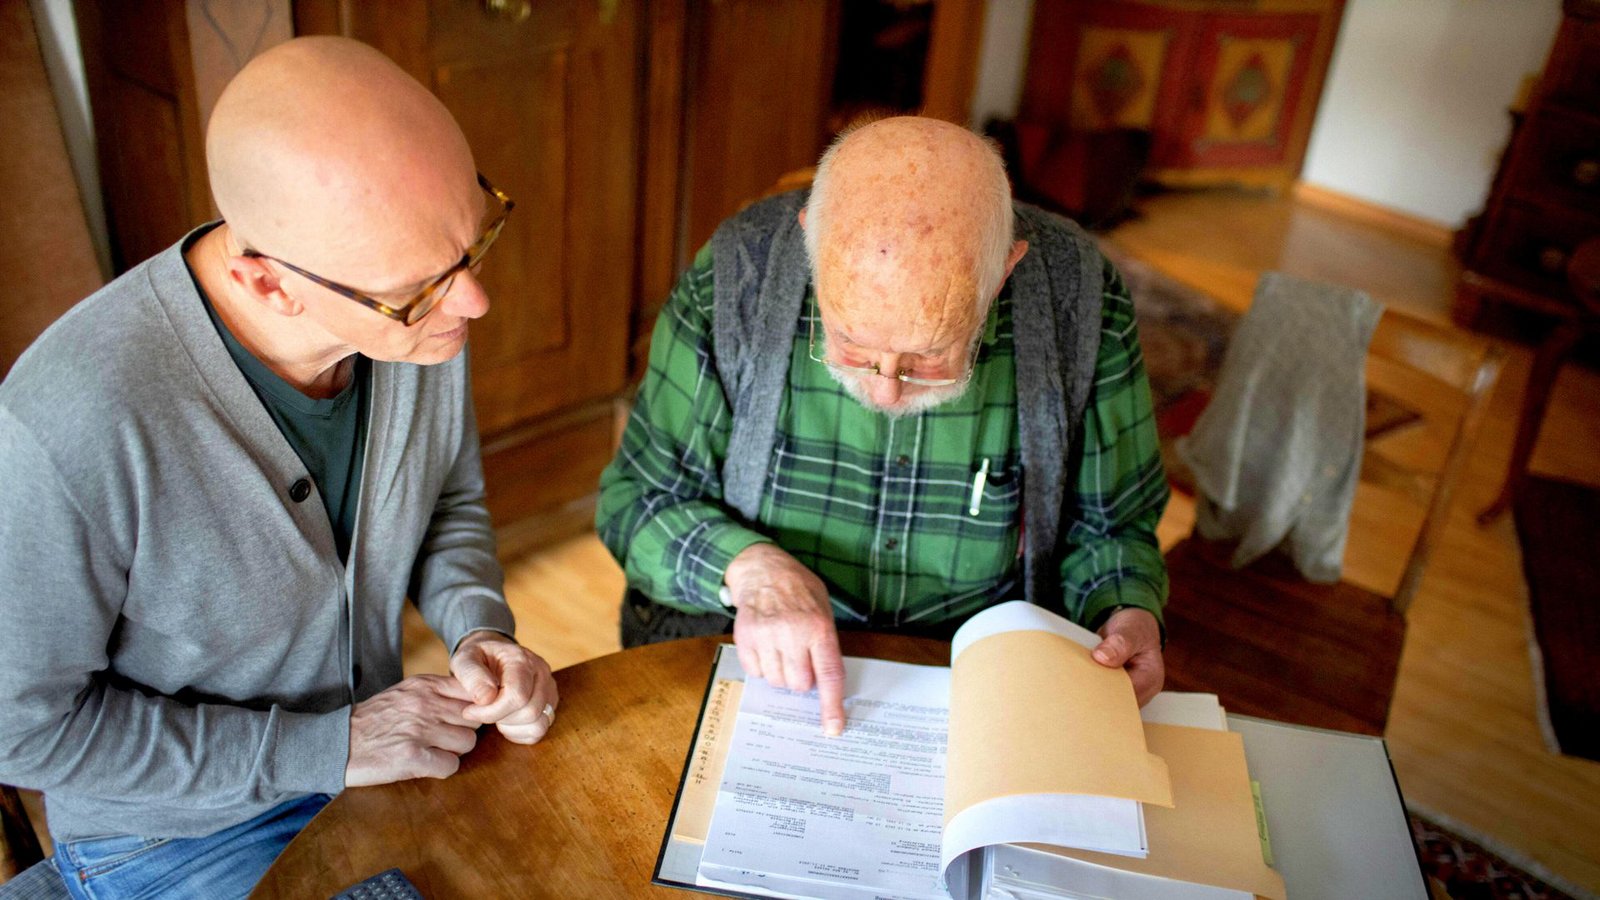 Ältere Menschen, die pflegebedürftig werden, können schnell in finanzielle Nöte geraten.Foto: Imago images/photothek/Ute Grabowsky